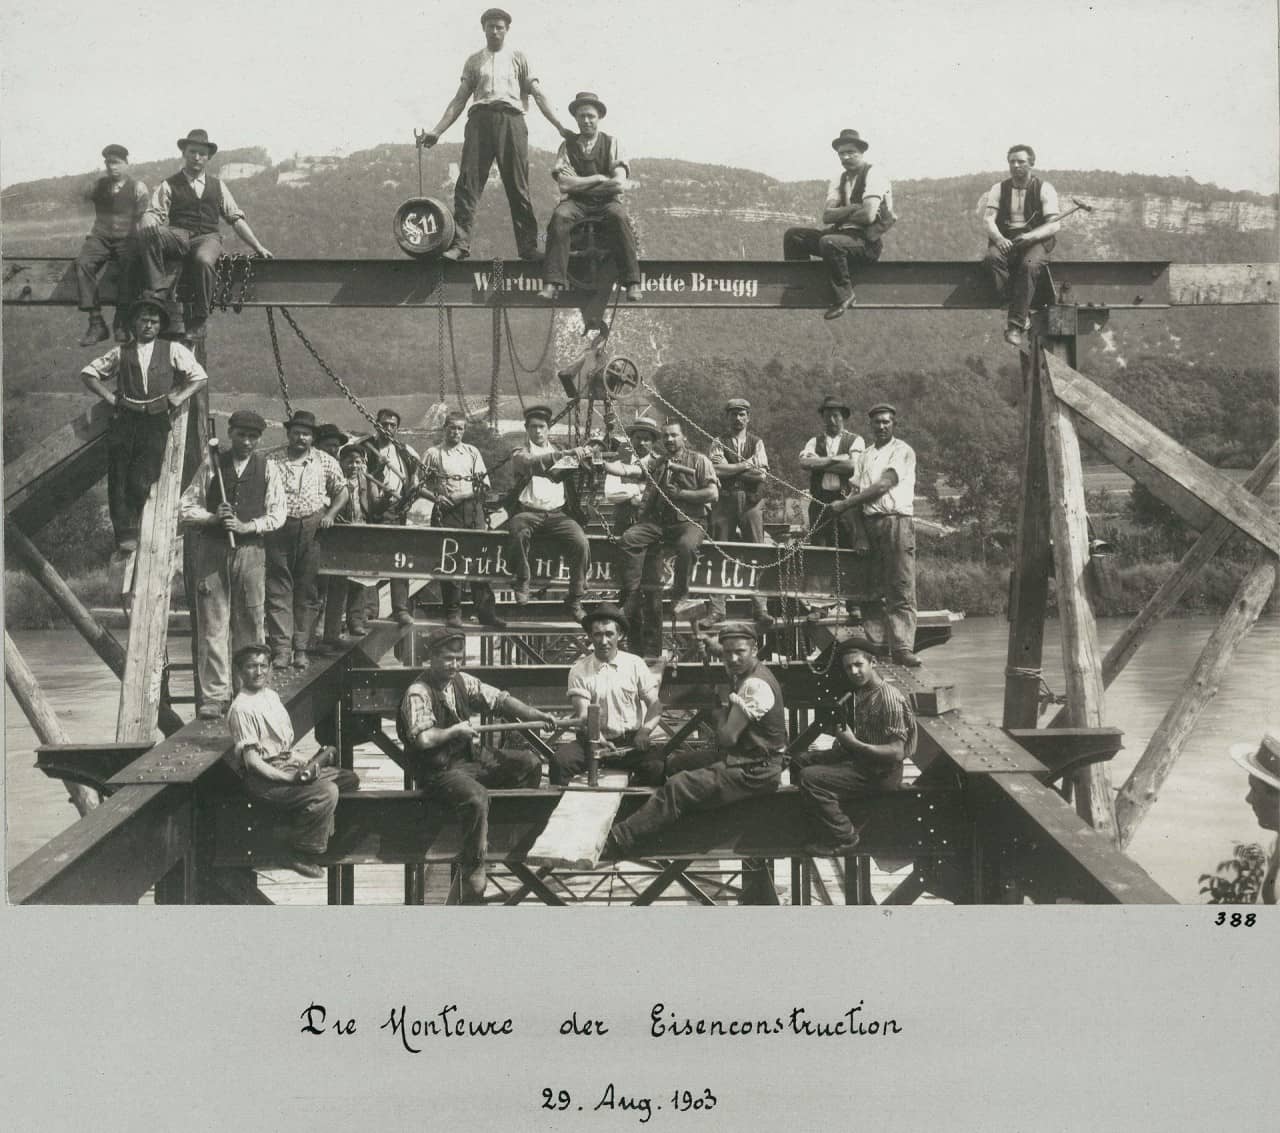 Schwarzweisses Foto zeigt Monteure beim Brückenbau auf einem Eisengerüst sitzend und stehend mit Werkzeugen in der Hand. Im Hintergrund die Aare und Hügelkette zu sehen. 